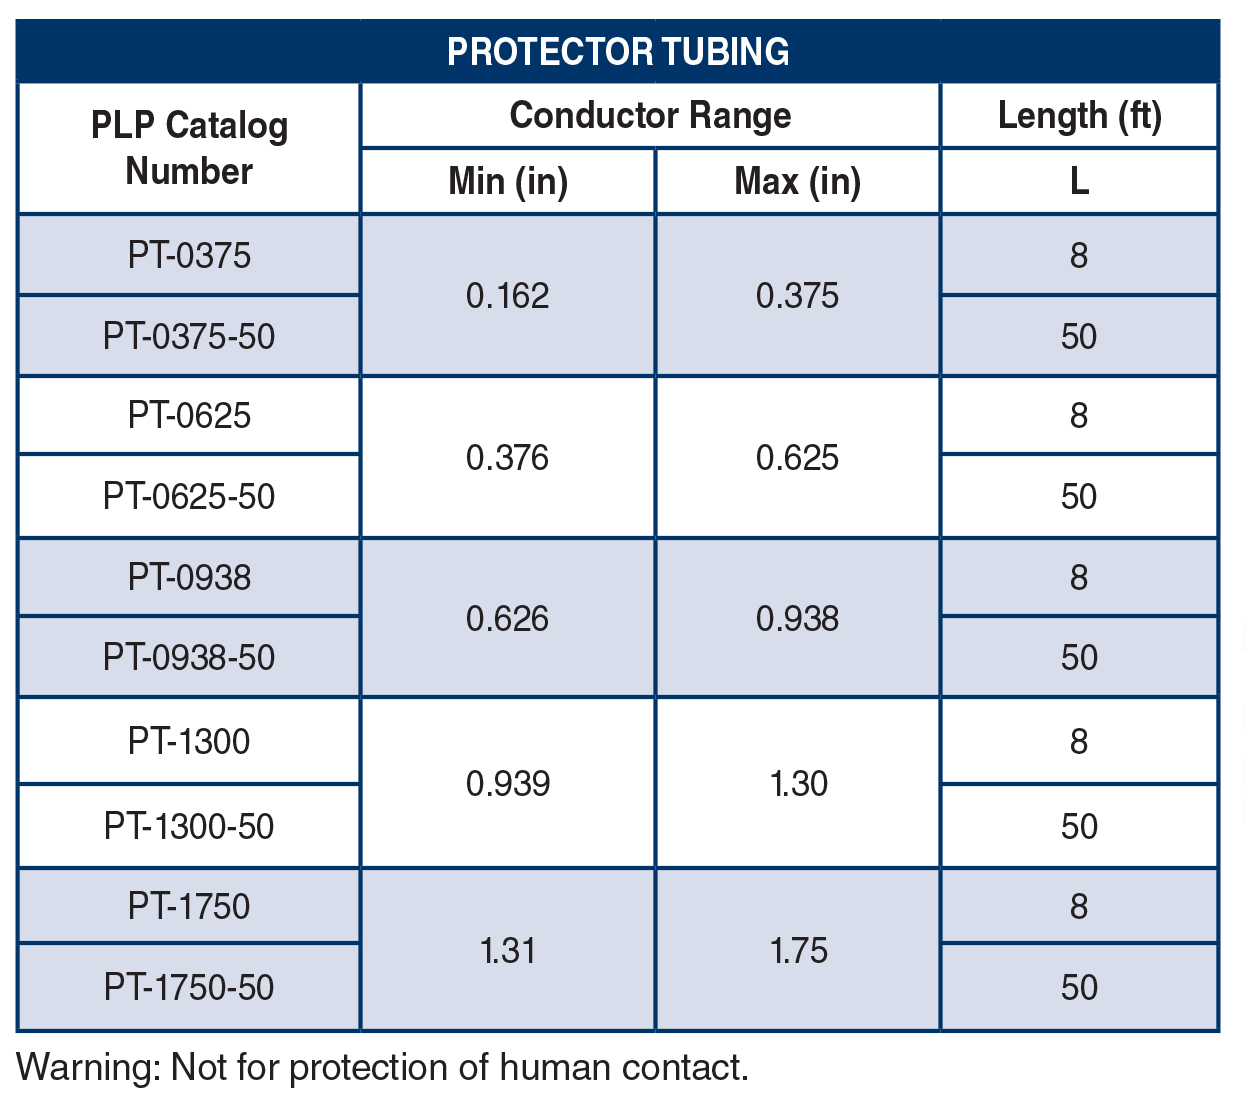 ProtectorTubing-table.jpg